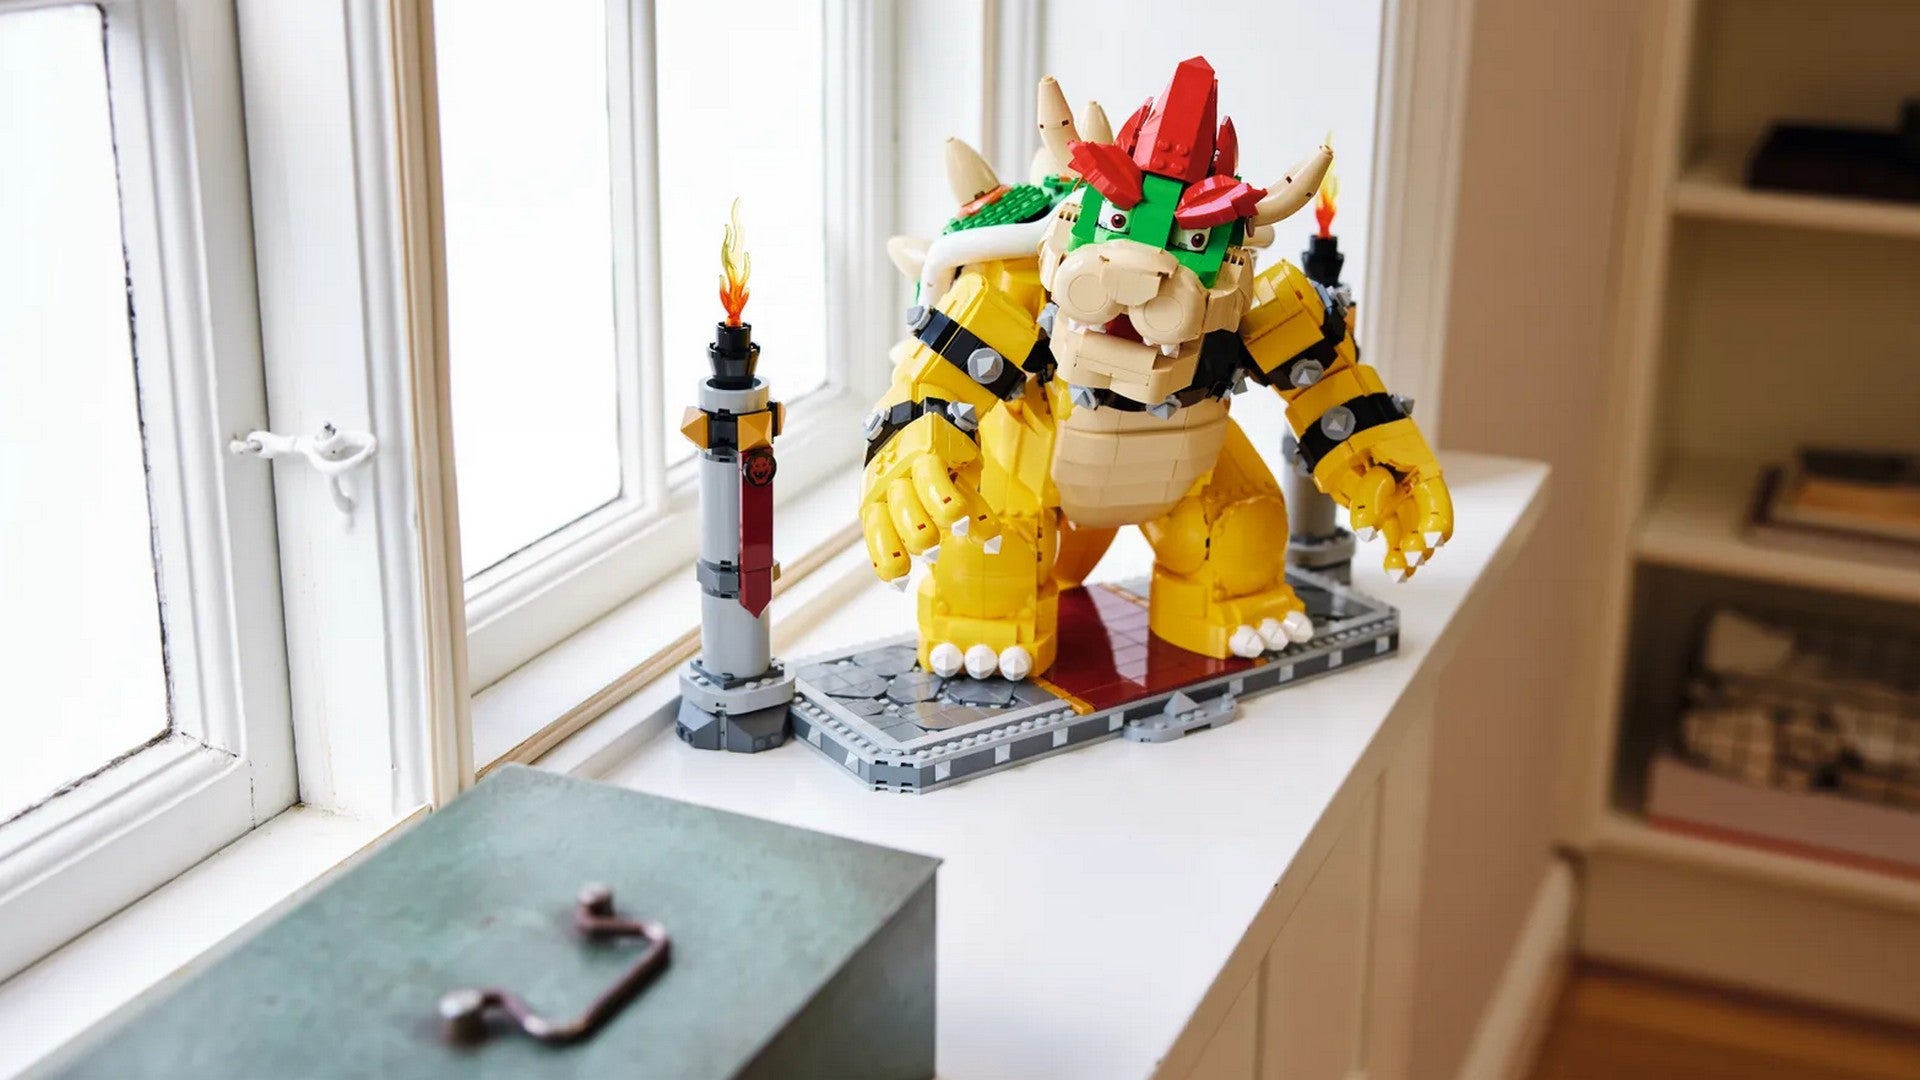 Das neue Lego-Set mit Bowser aus Super Mario.